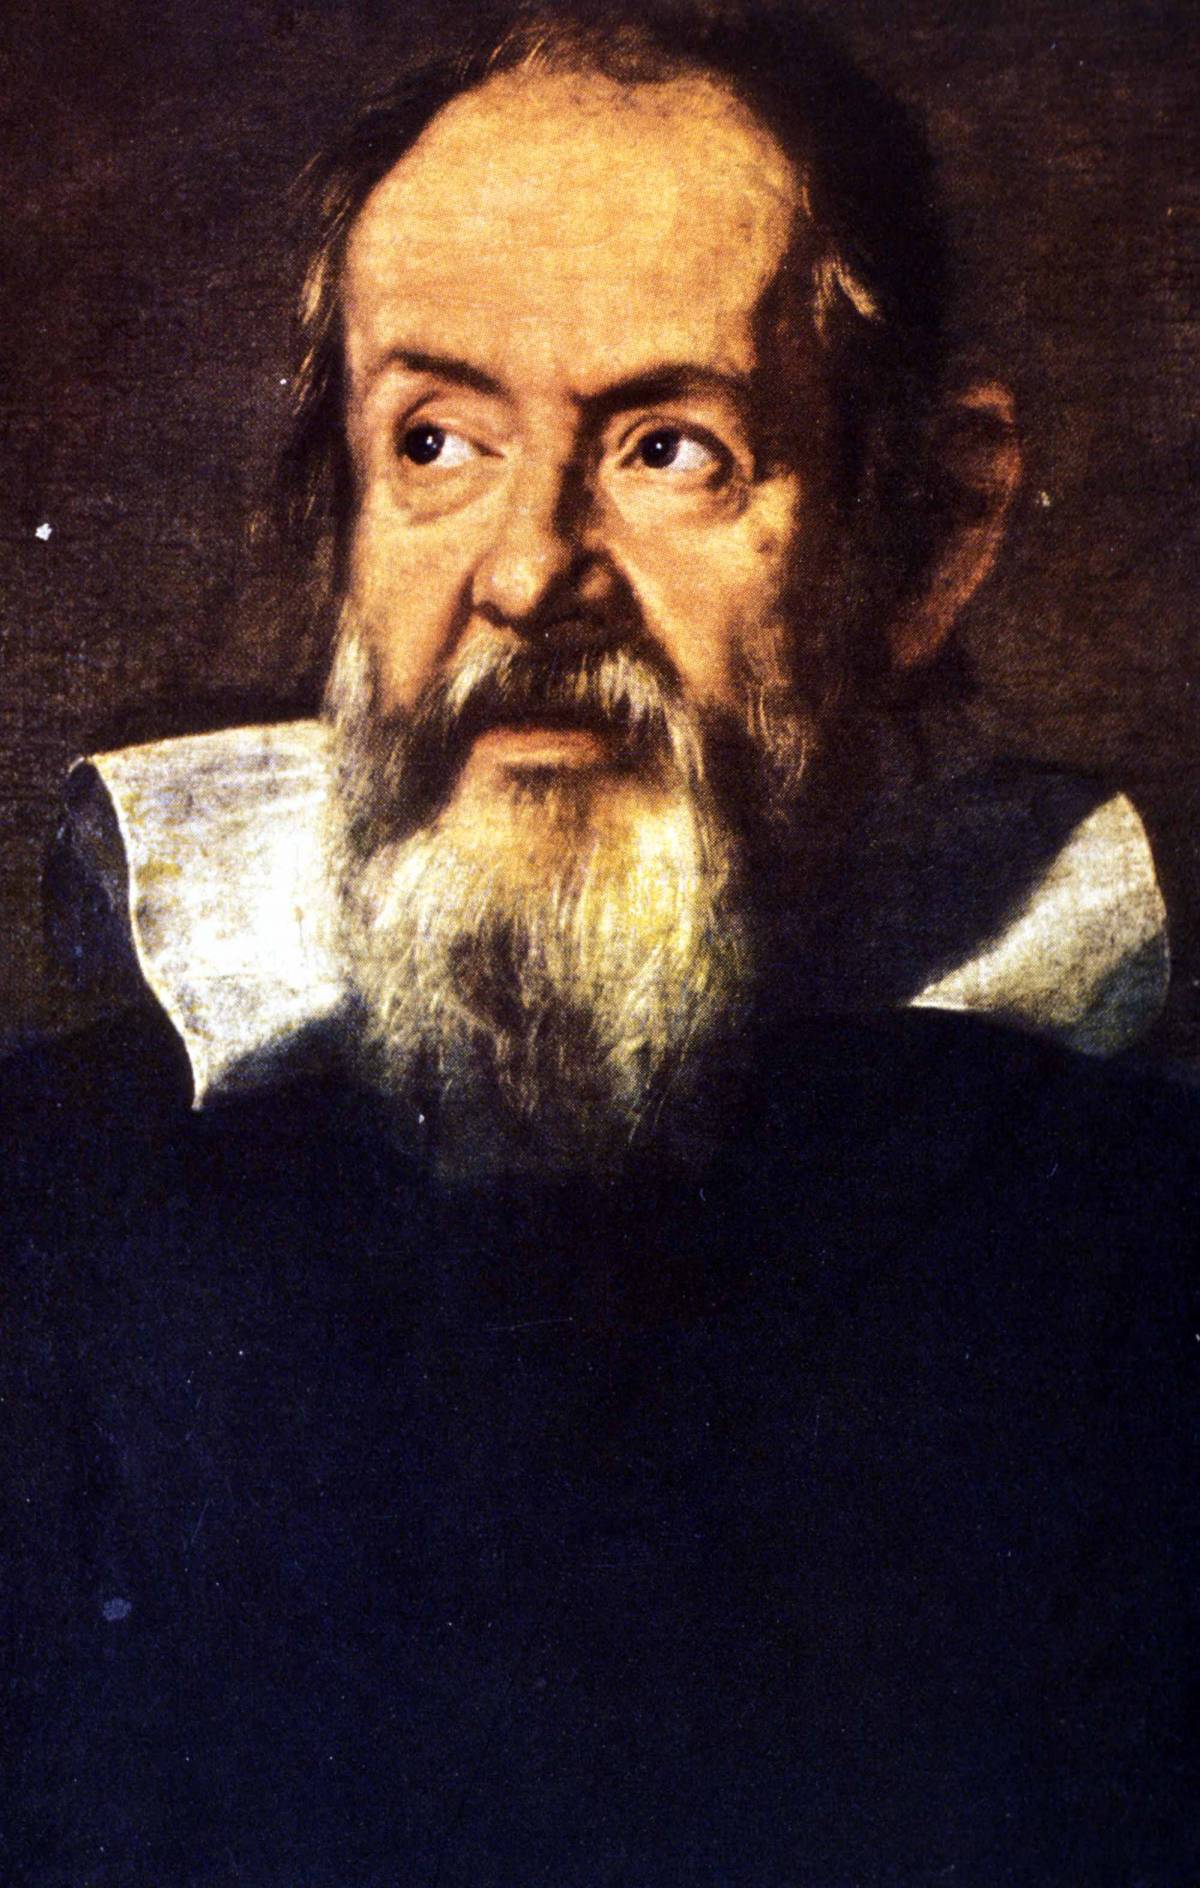 Ecco le vere parole su Galileo